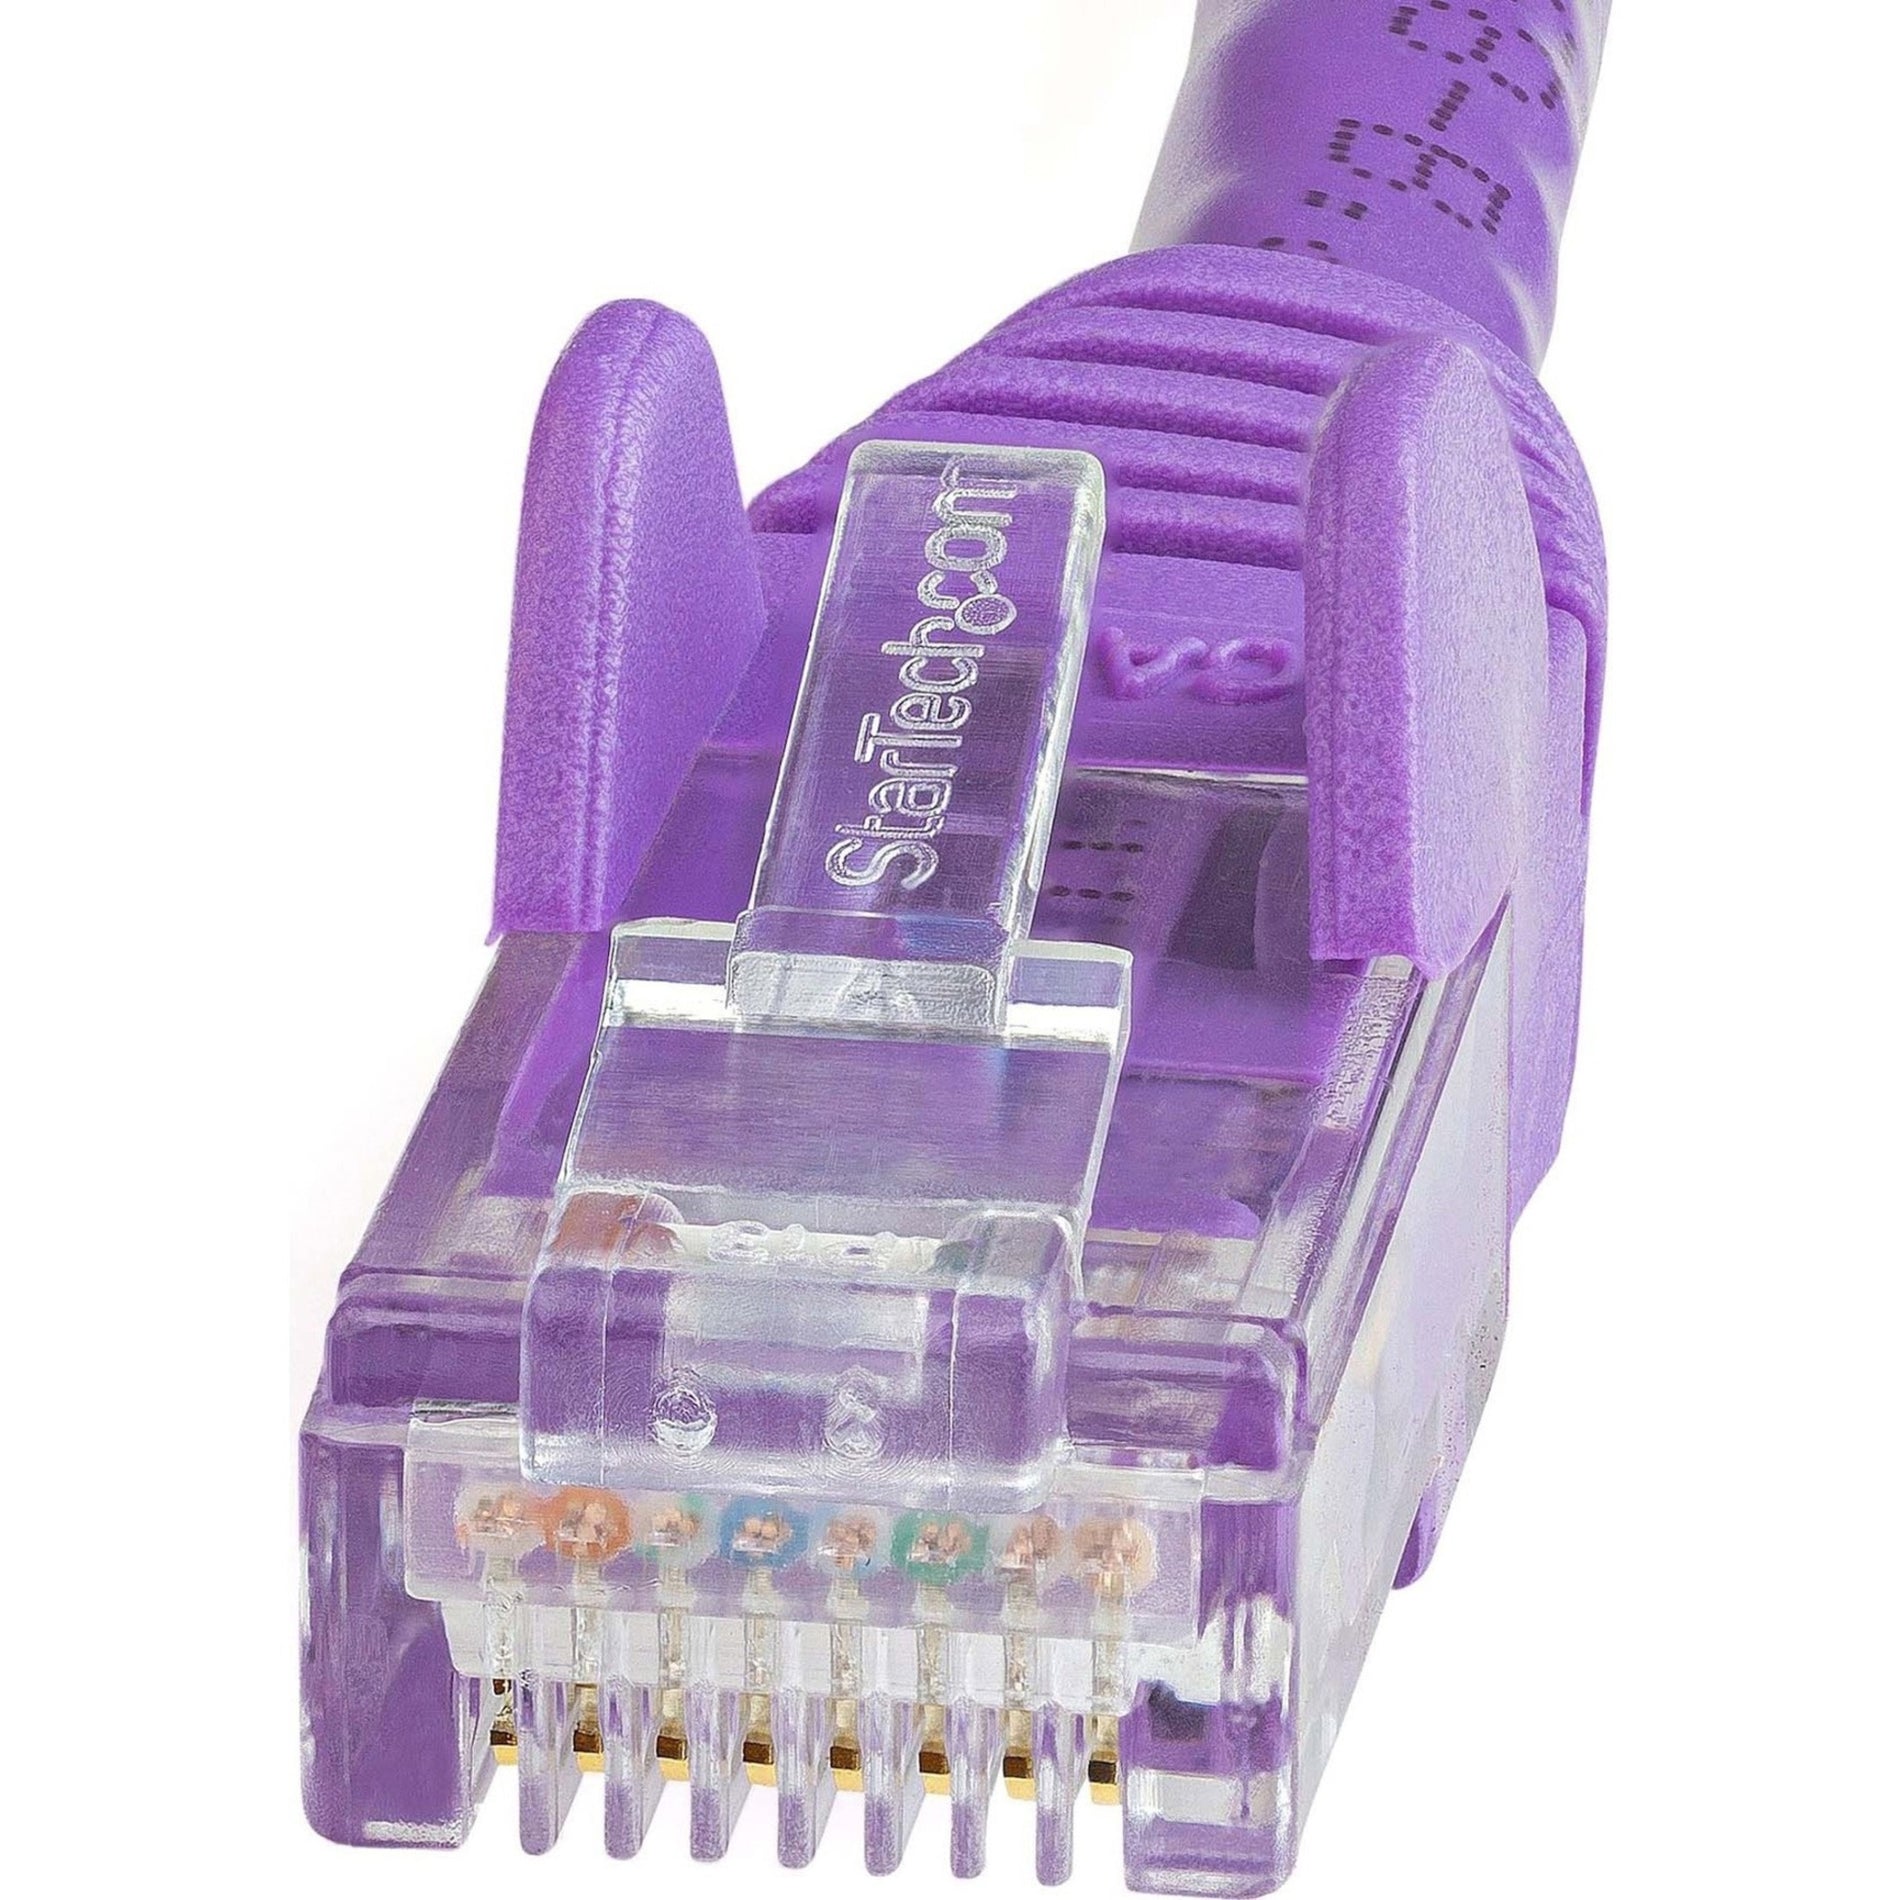 StarTech.com N6PATCH30PL Cat6 Patch Cable, 30ft Purple Ethernet Cable, Snagless RJ45 Connectors